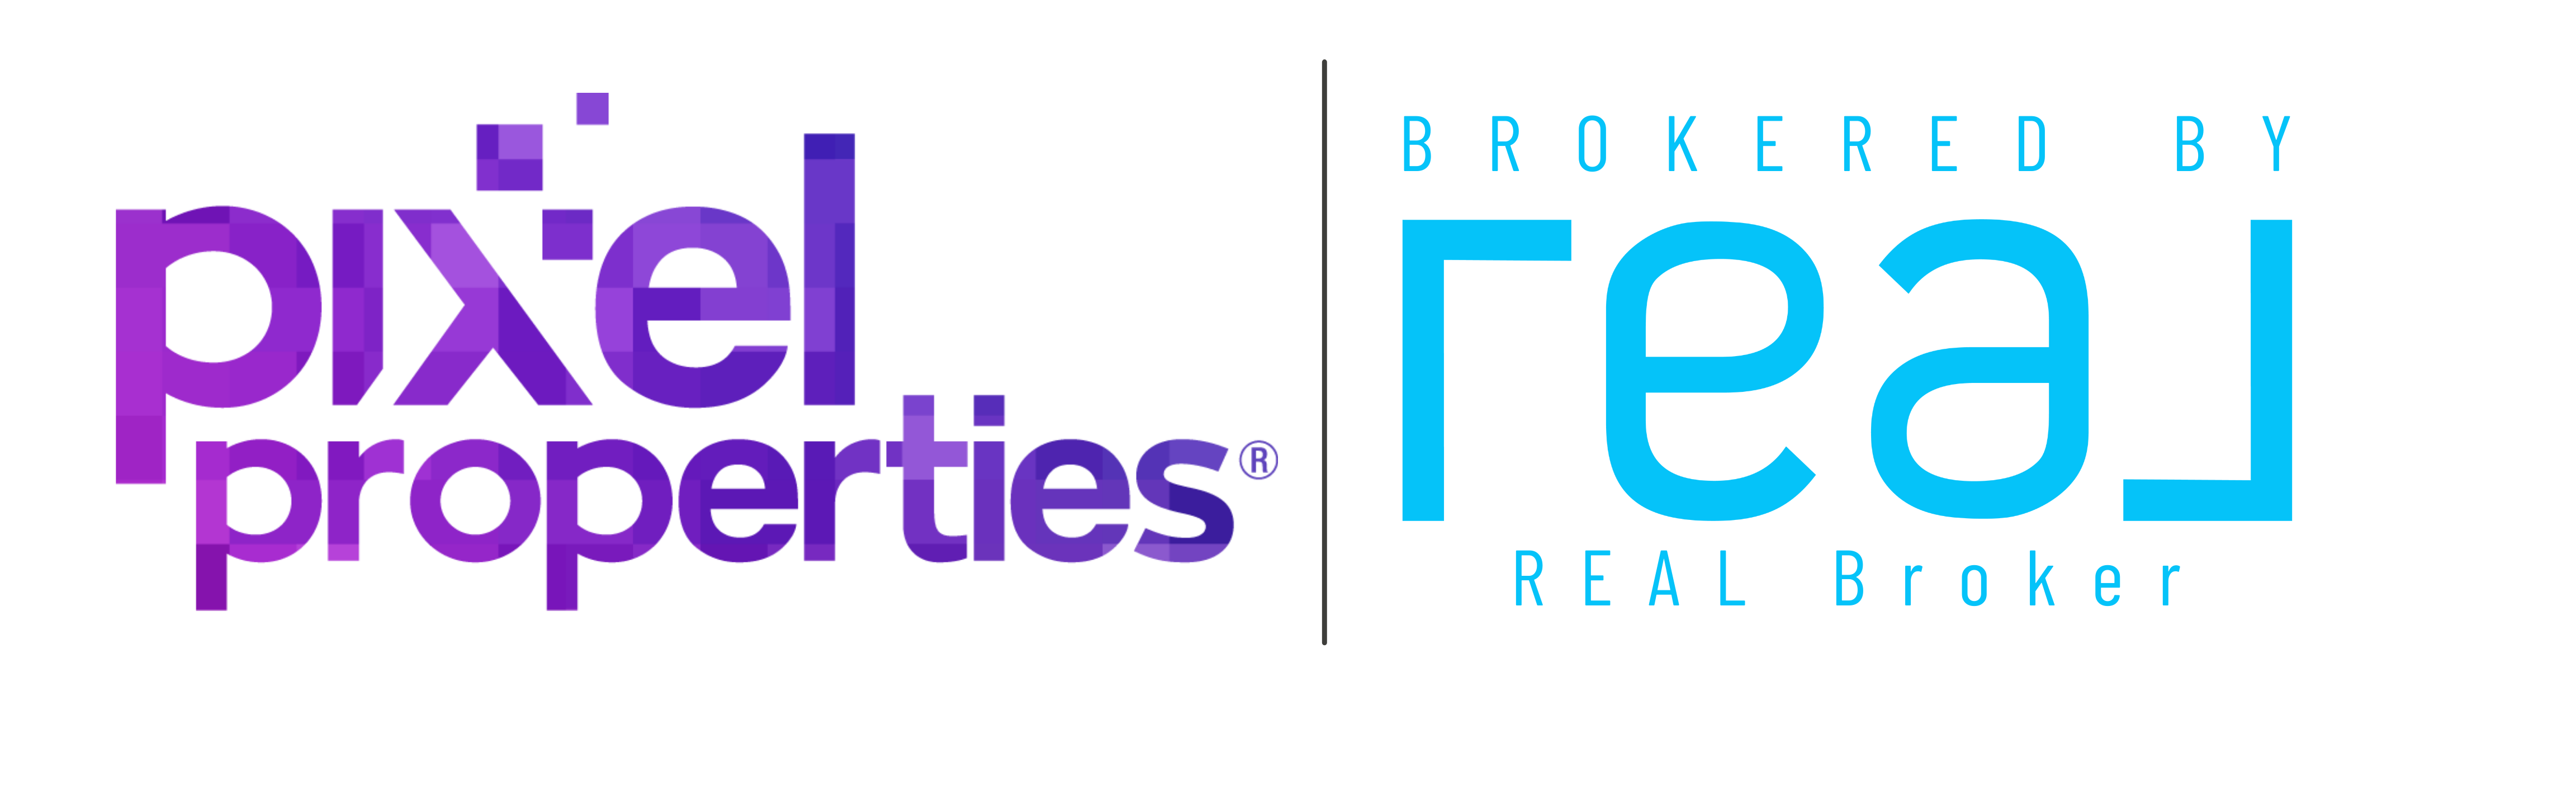 Pixel Properties® | brokered by REAL Broker